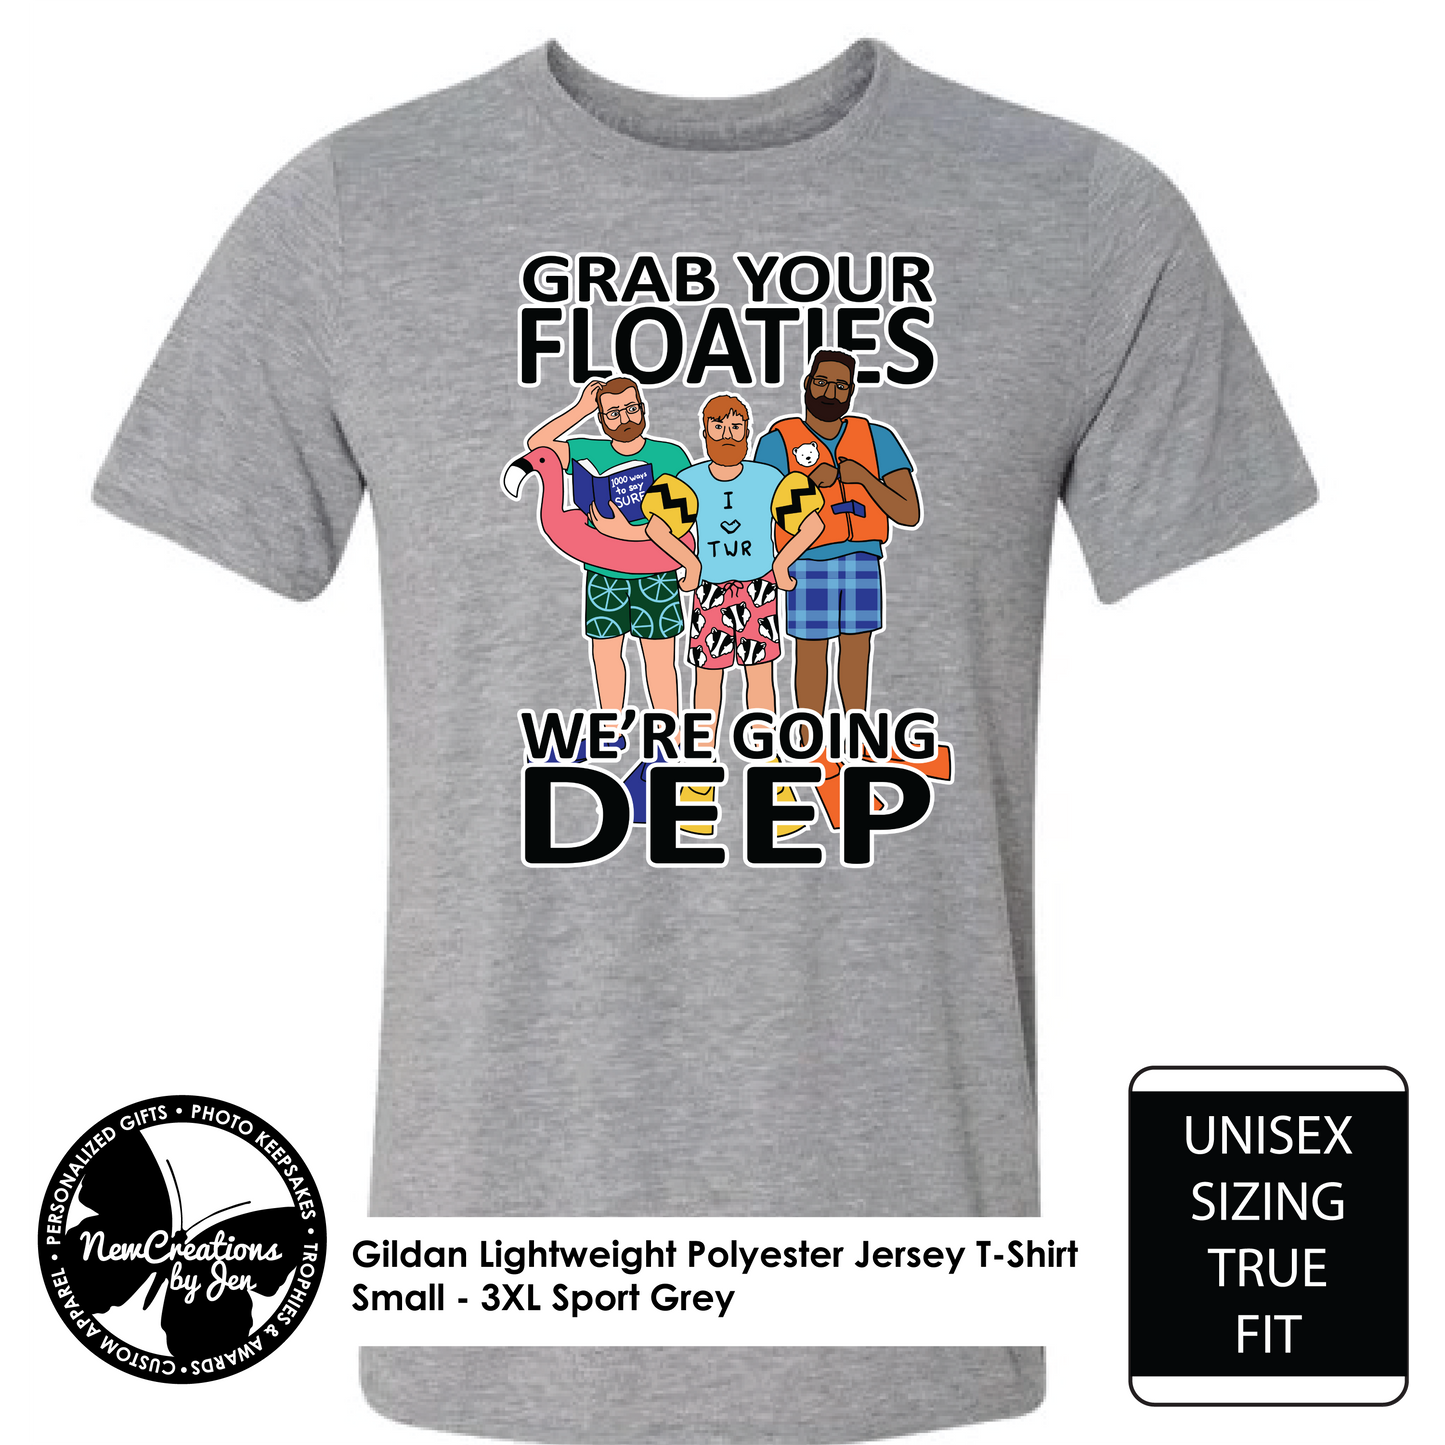 TWR Floaties T-Shirt